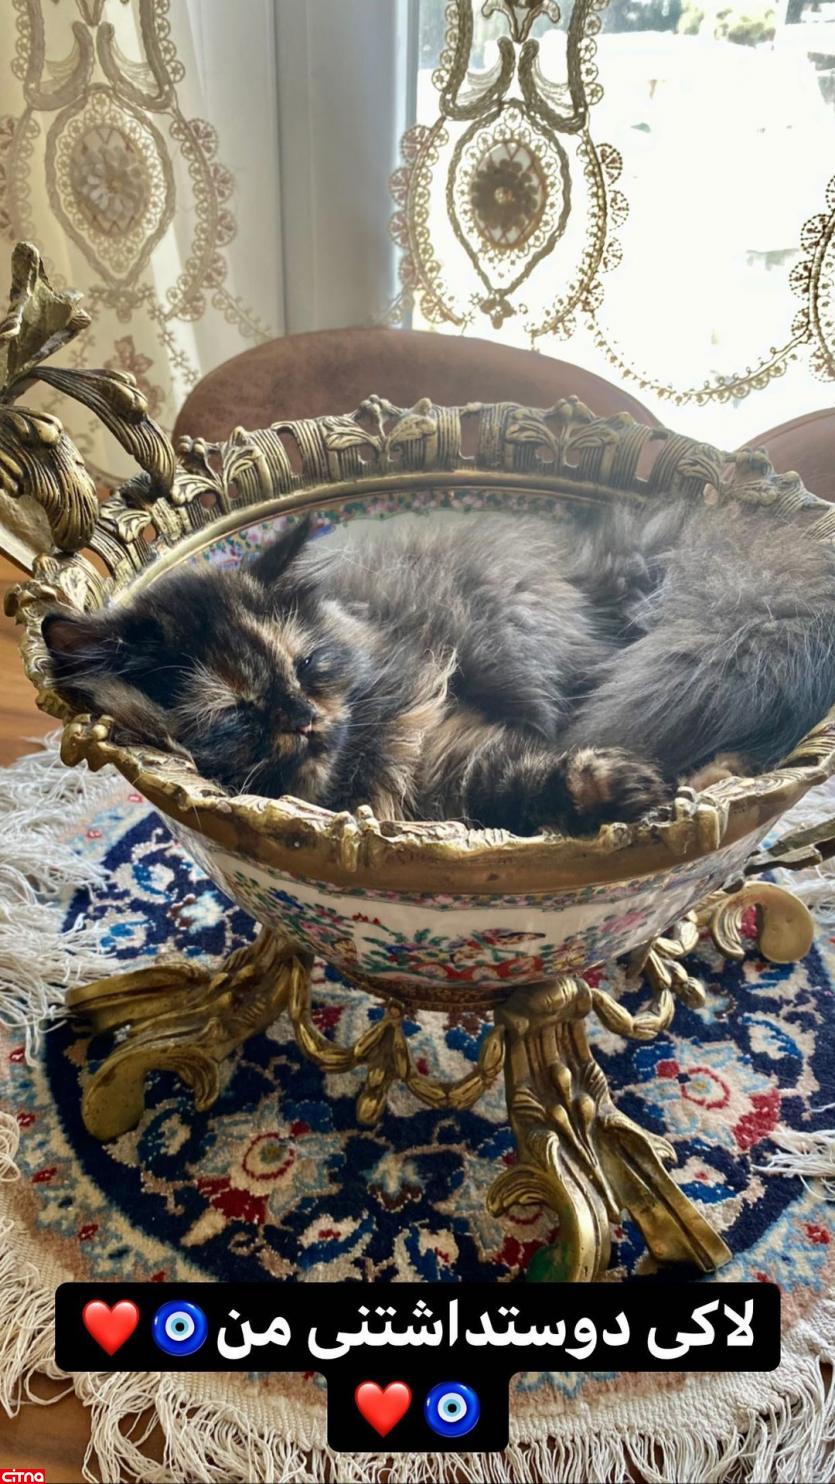 رونمایی خانم بازیگر از گربه میلیونی اش در اینستاگرام